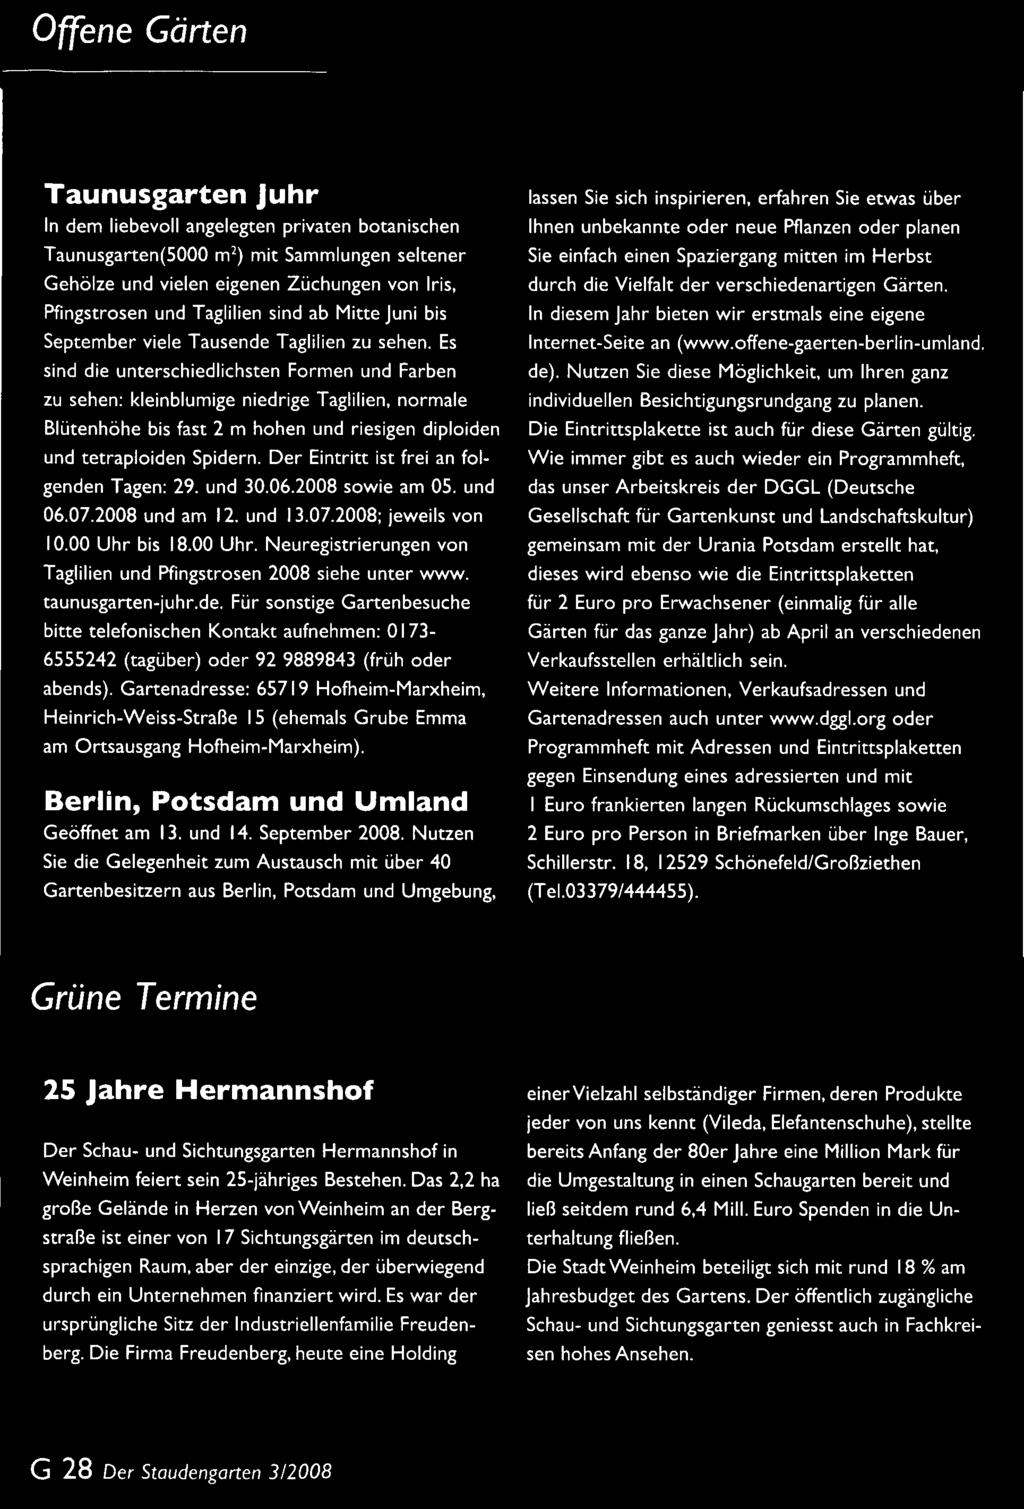 bis 18.00 Uhr. Neuregistrierungen von Taglilien und Pfingstrosen 2008 siehe unter www. taunusgarten-juhr.de.